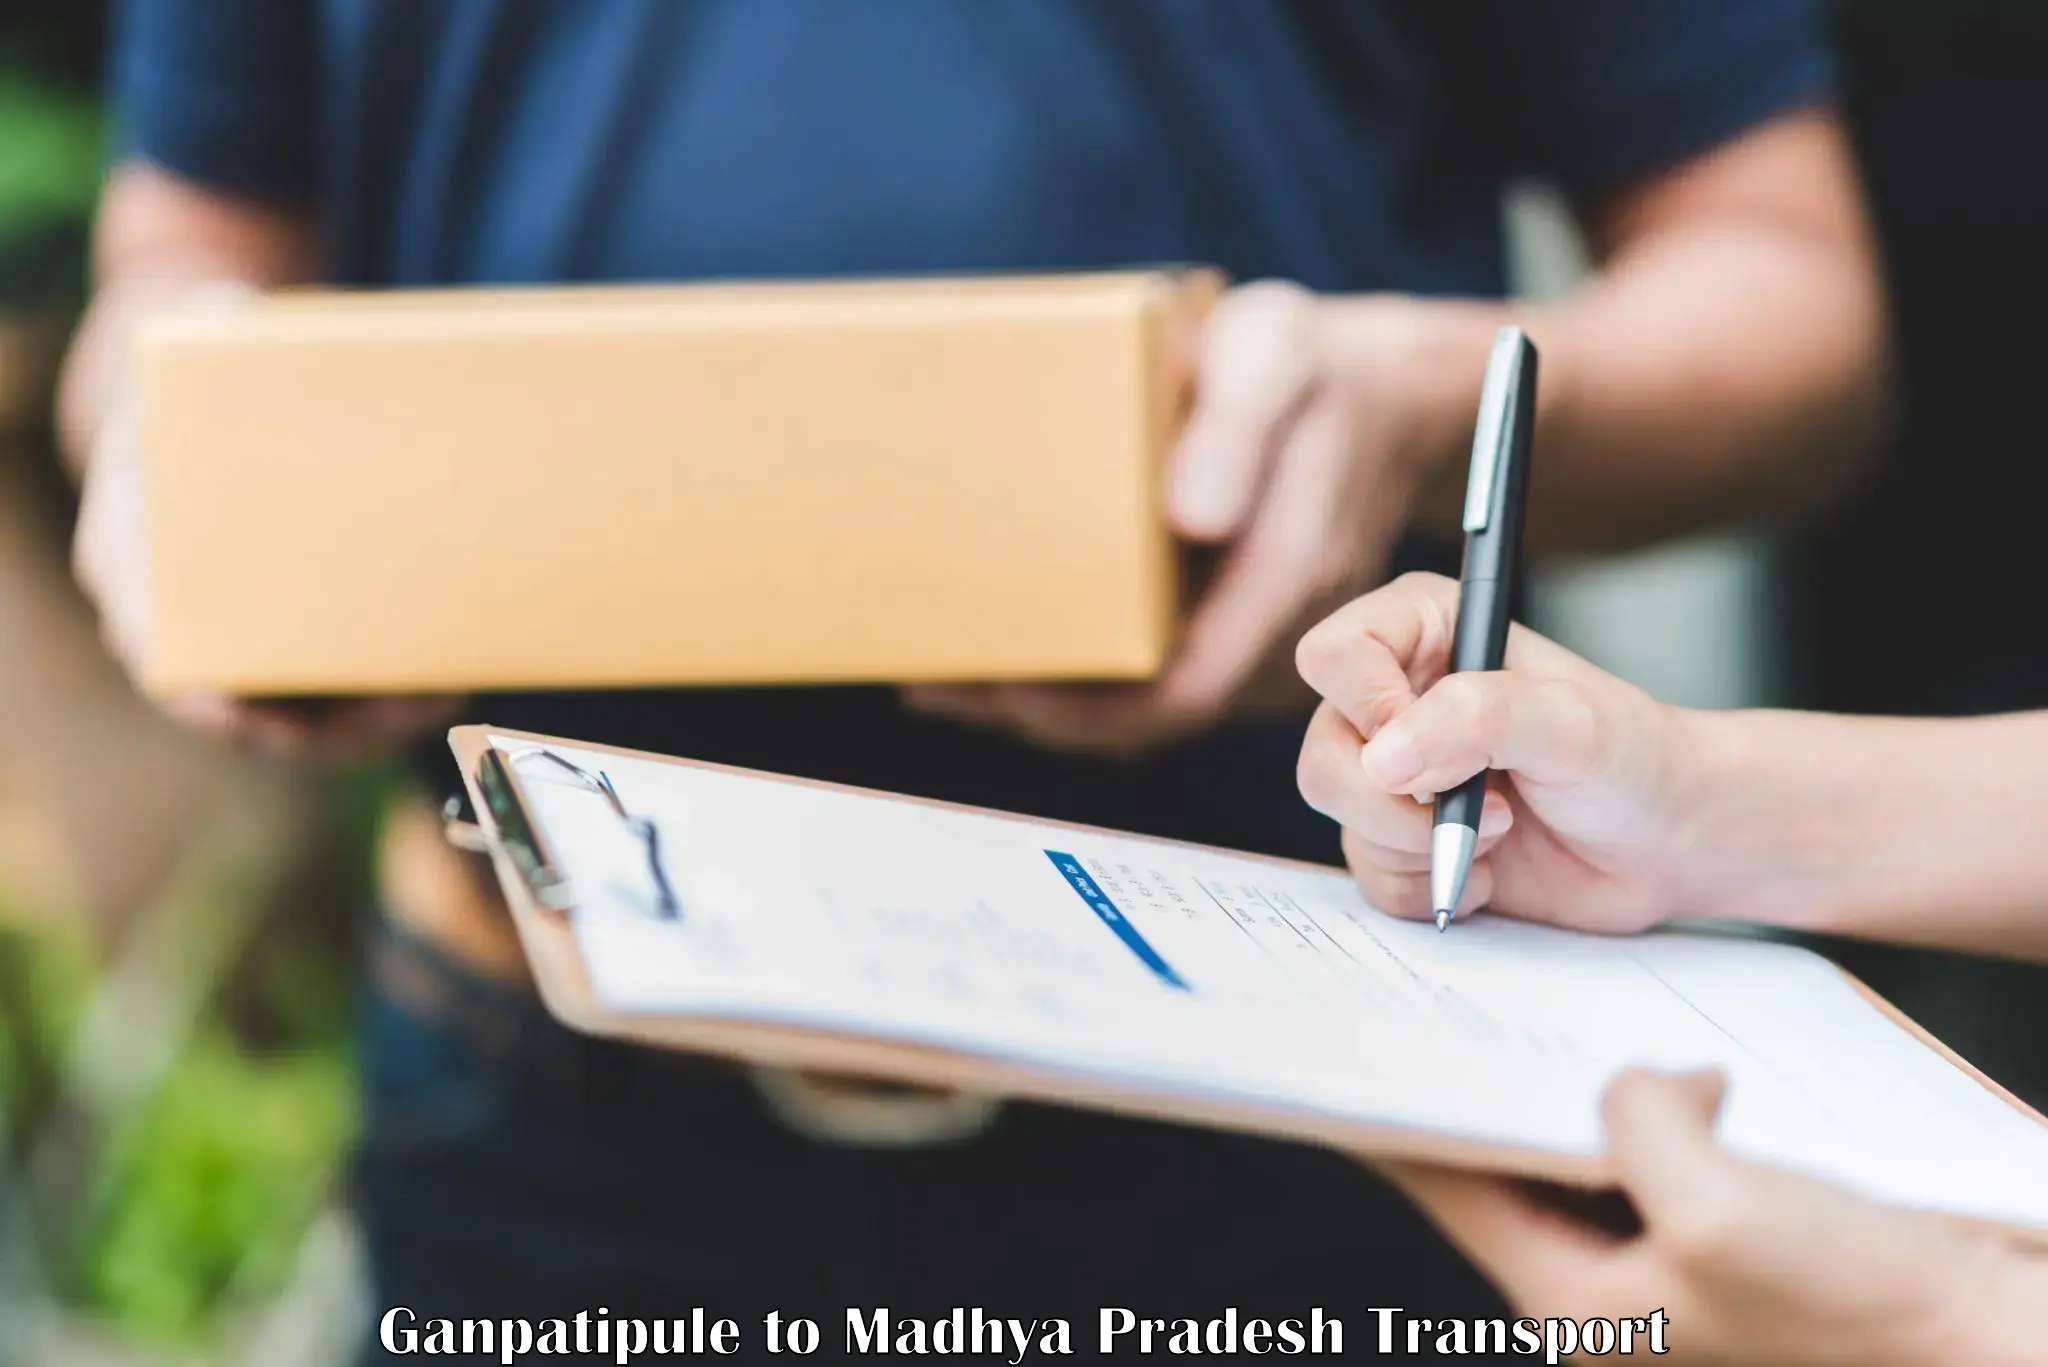 Road transport online services Ganpatipule to Kotma